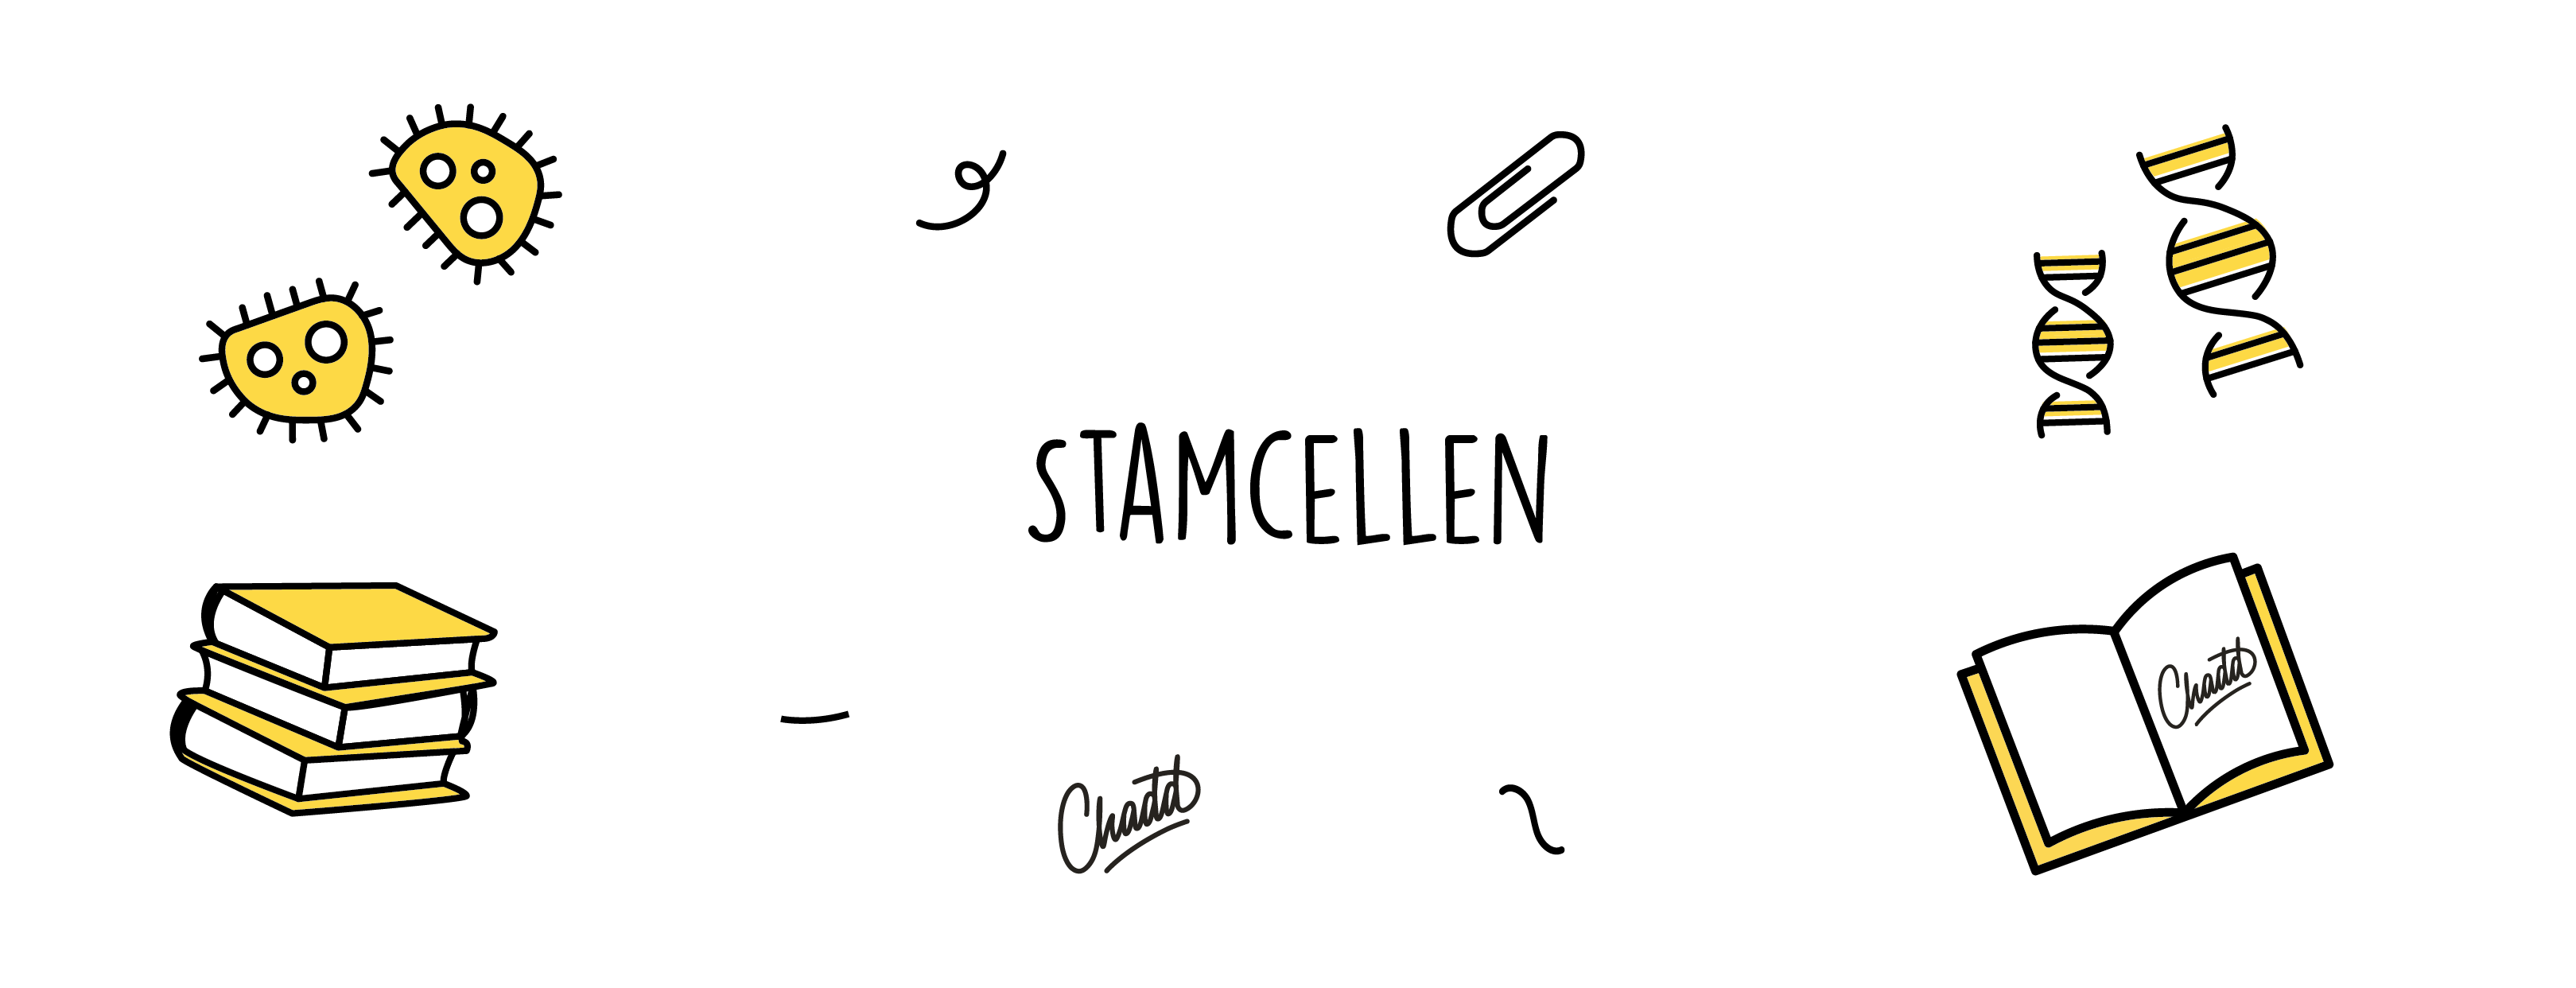 stamcellen